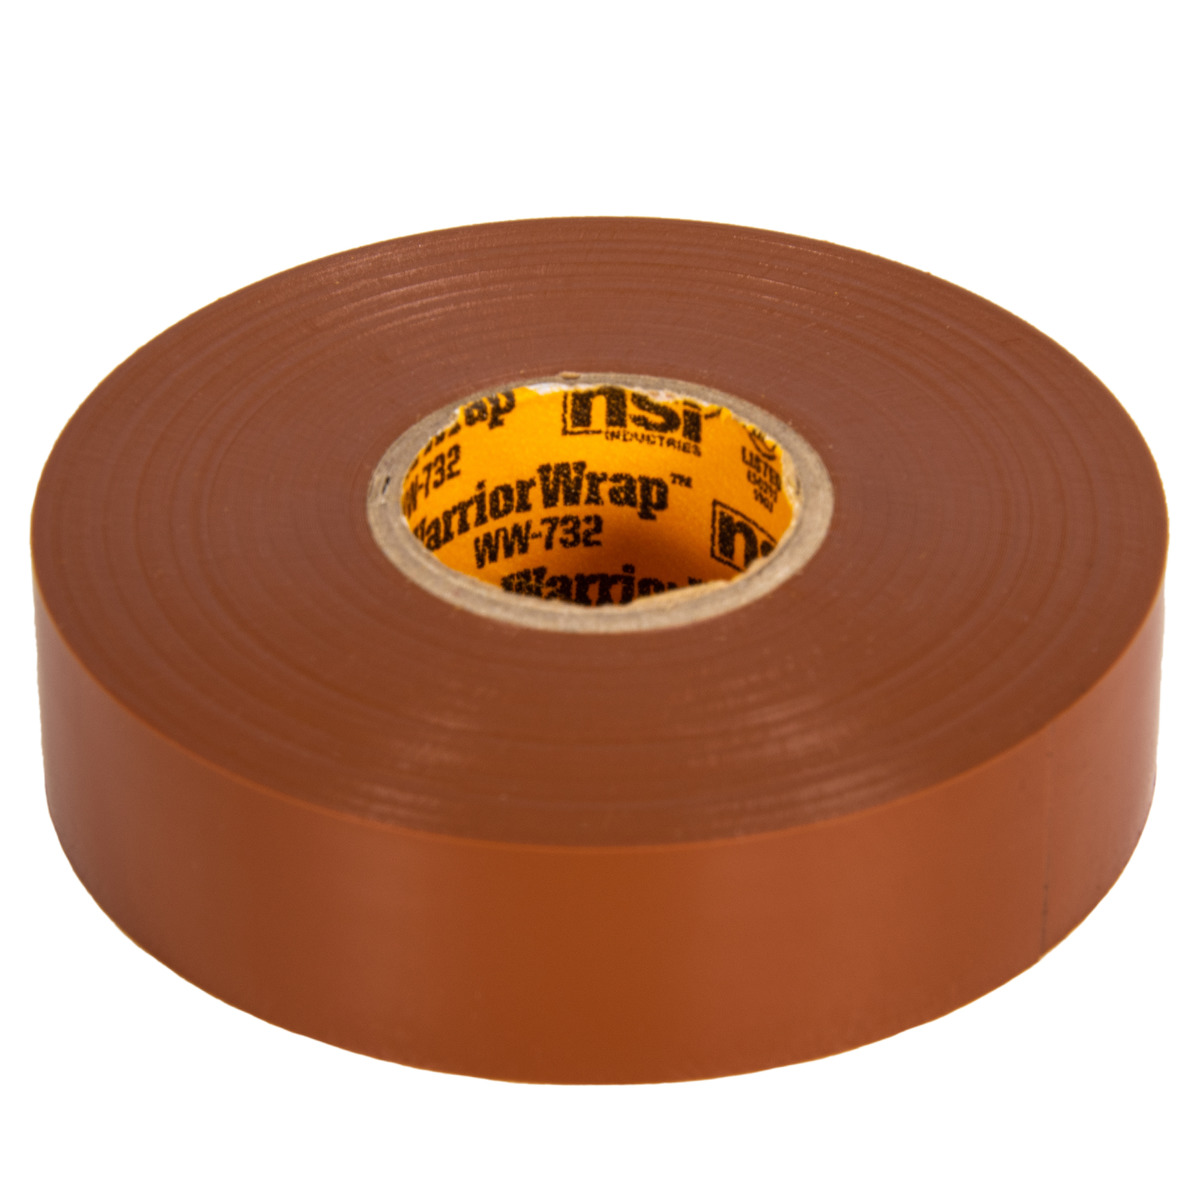 artikel Toelating Inefficiënt Professional Brown Vinyl Electrical Tape, 7mil, 66ft Long - NSI Industries